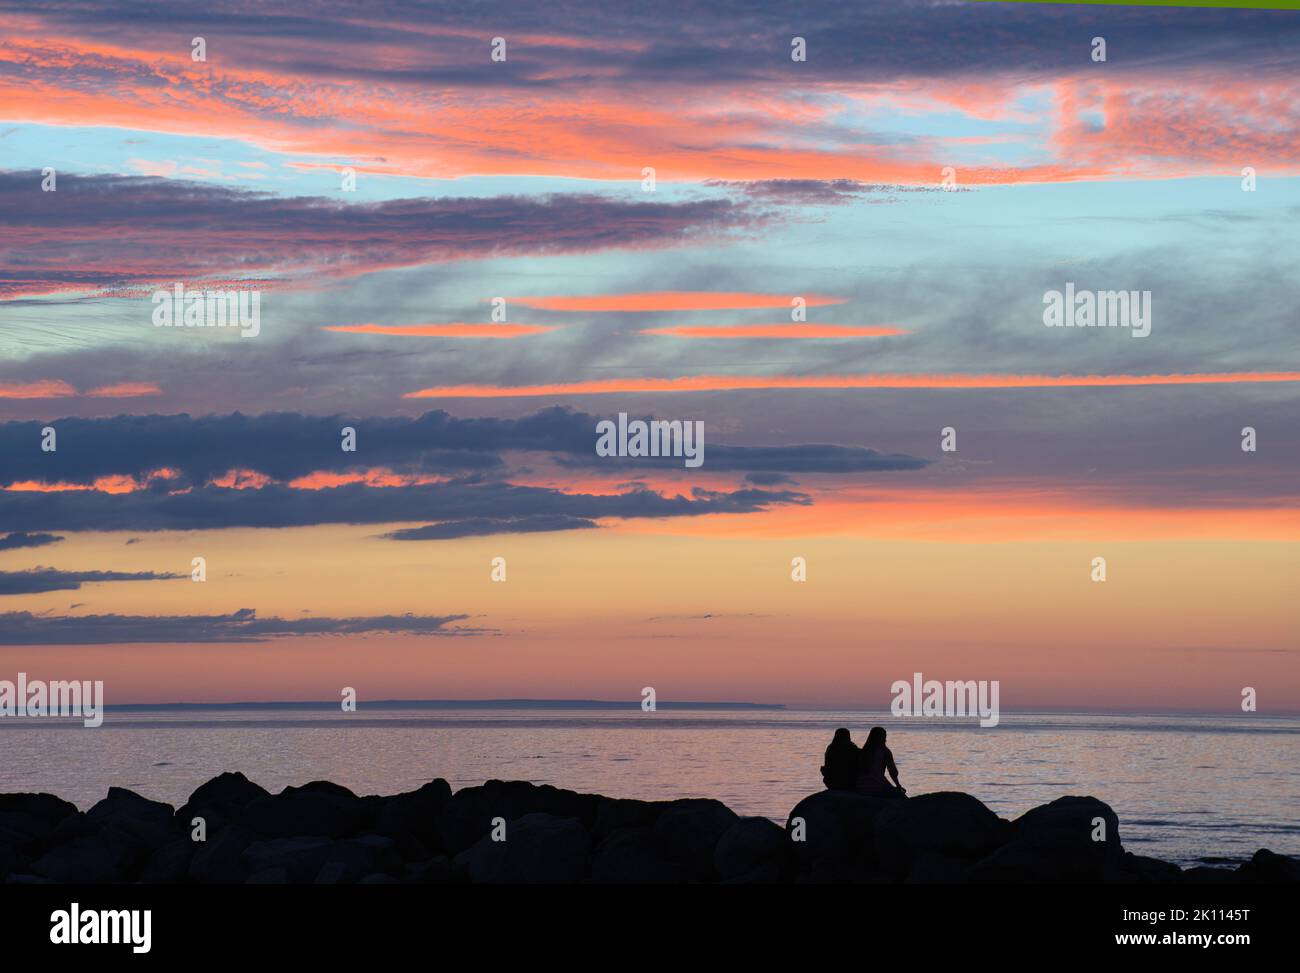 Ruhige Dämmerungsszene am Cape Cod Beach. Dunkle Silhouetten zweier unkenntlich gegannter Frauen, die auf Wellenfelsen sitzen und den farbenfrohen Sonnenuntergang betrachten. Stockfoto